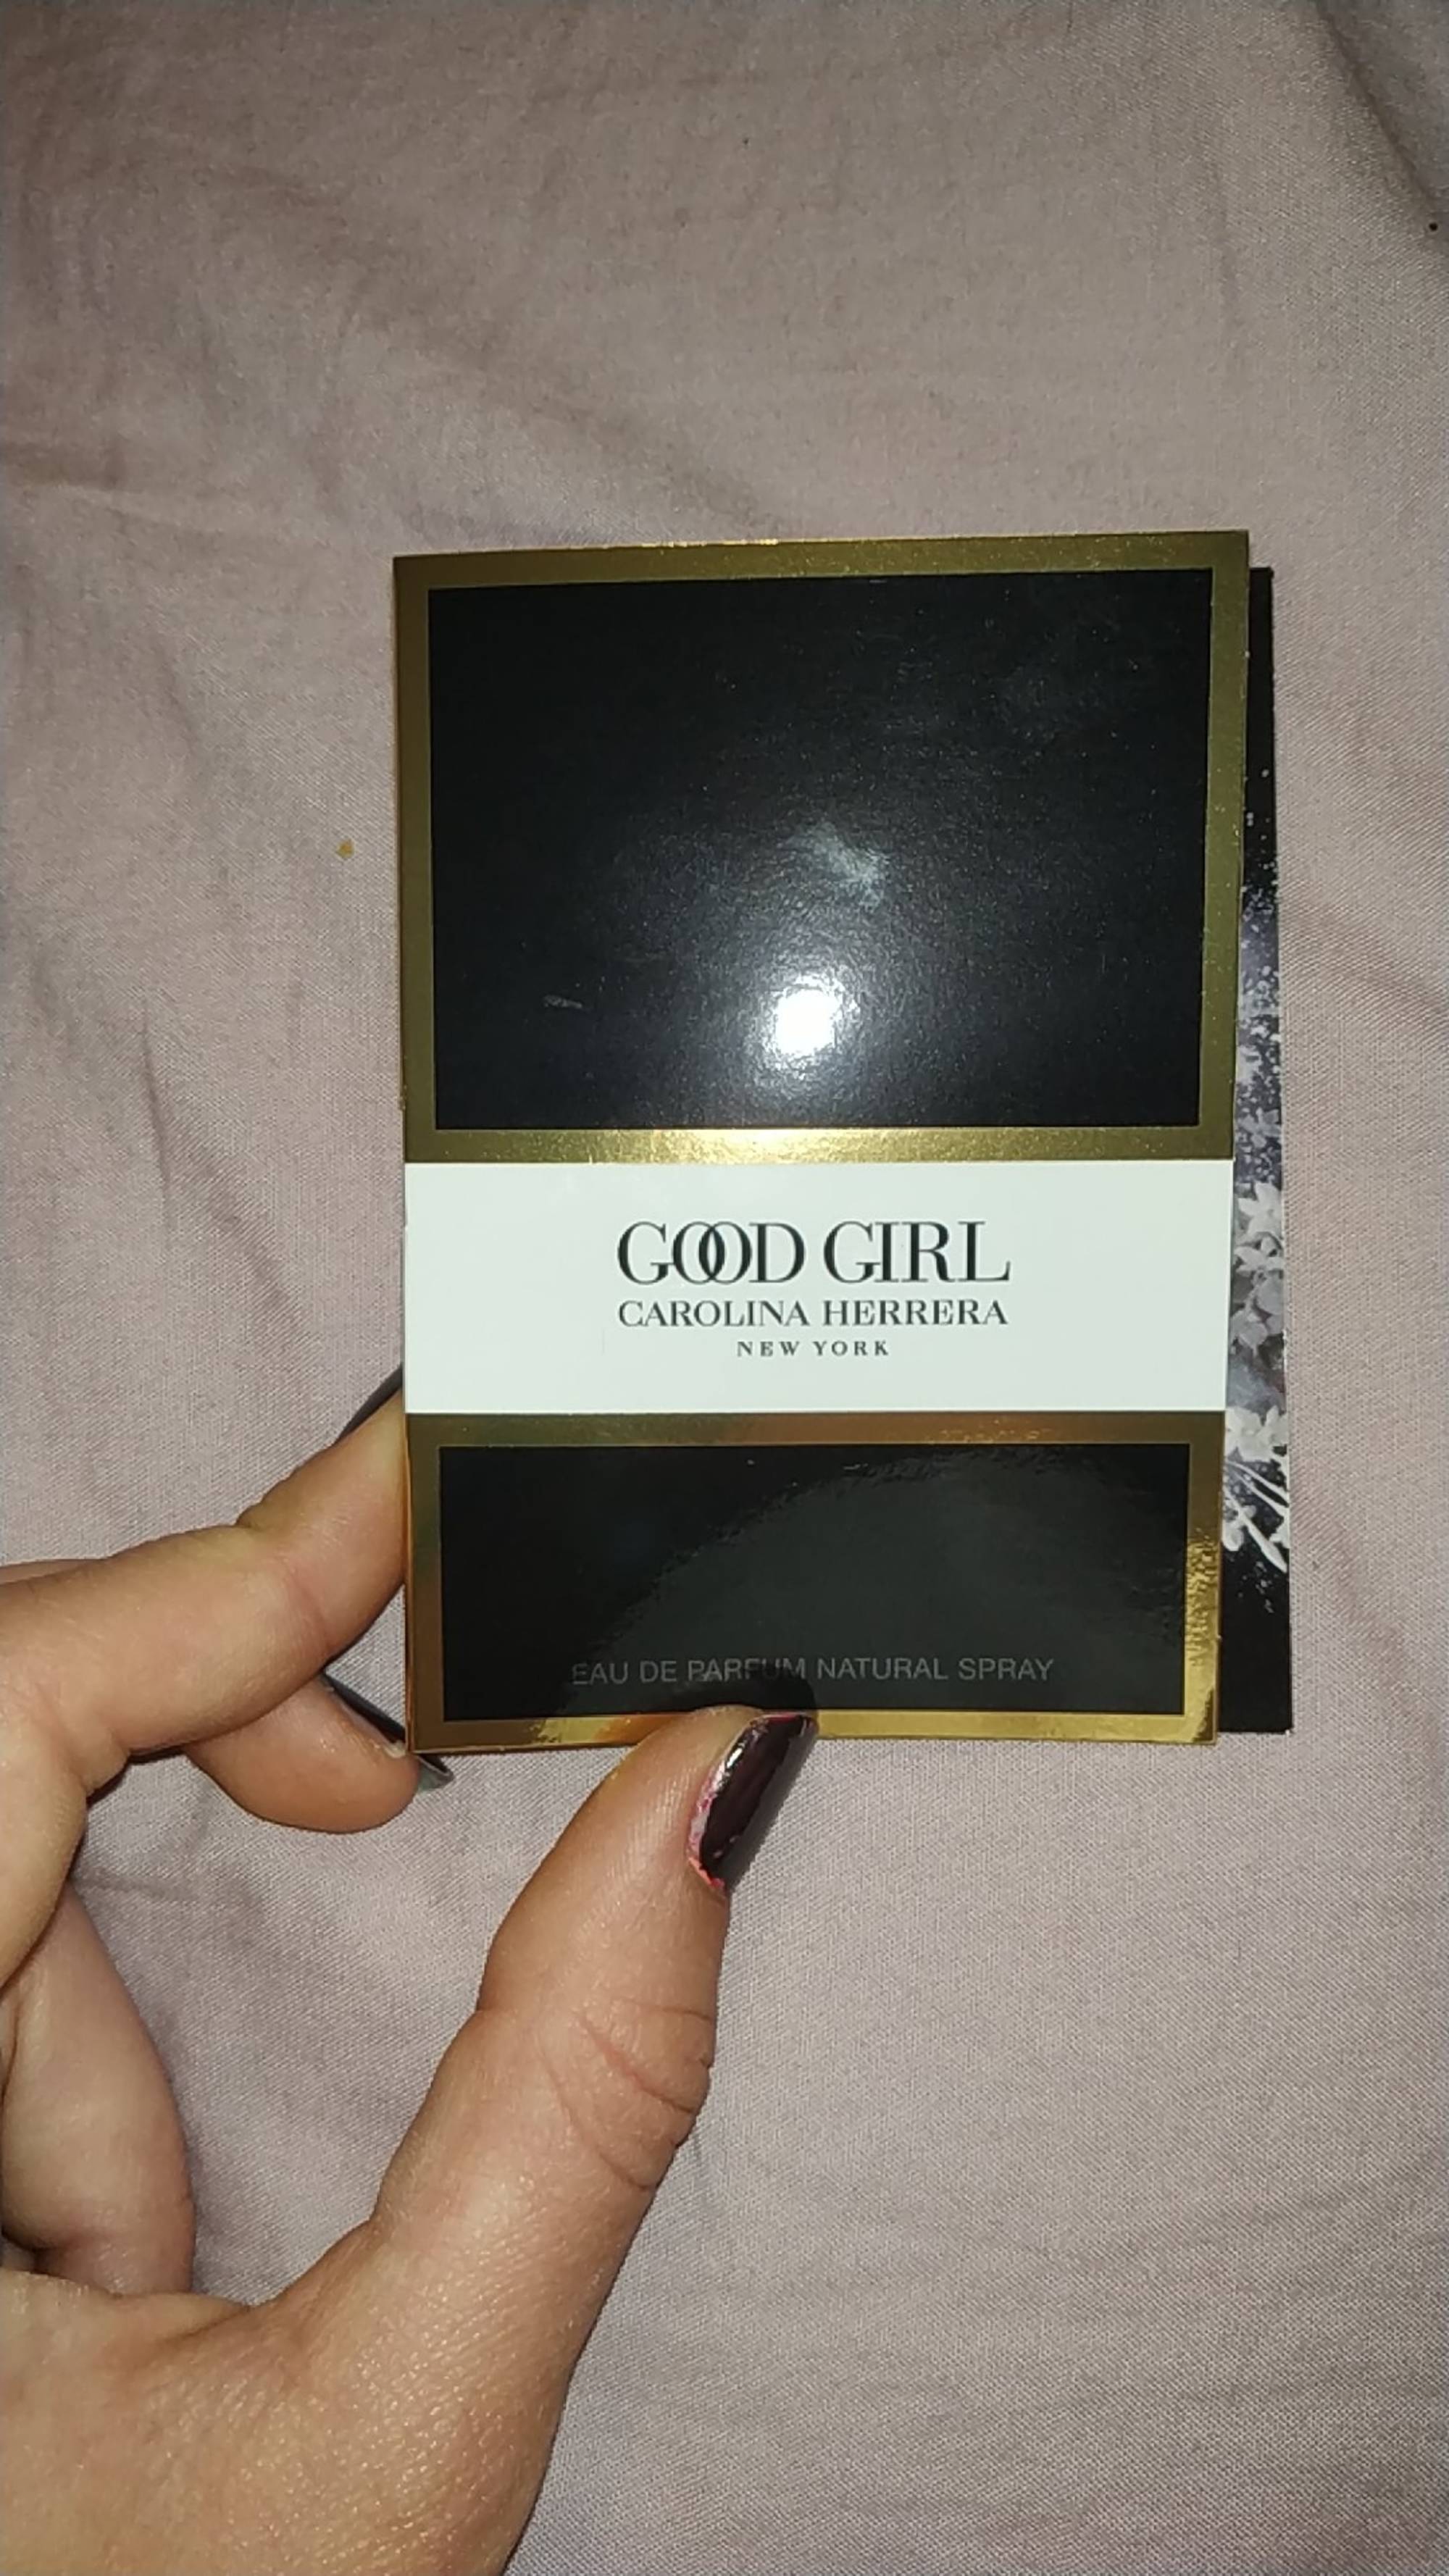 CAROLINA HERRERA - Good girl - Eau de parfum 